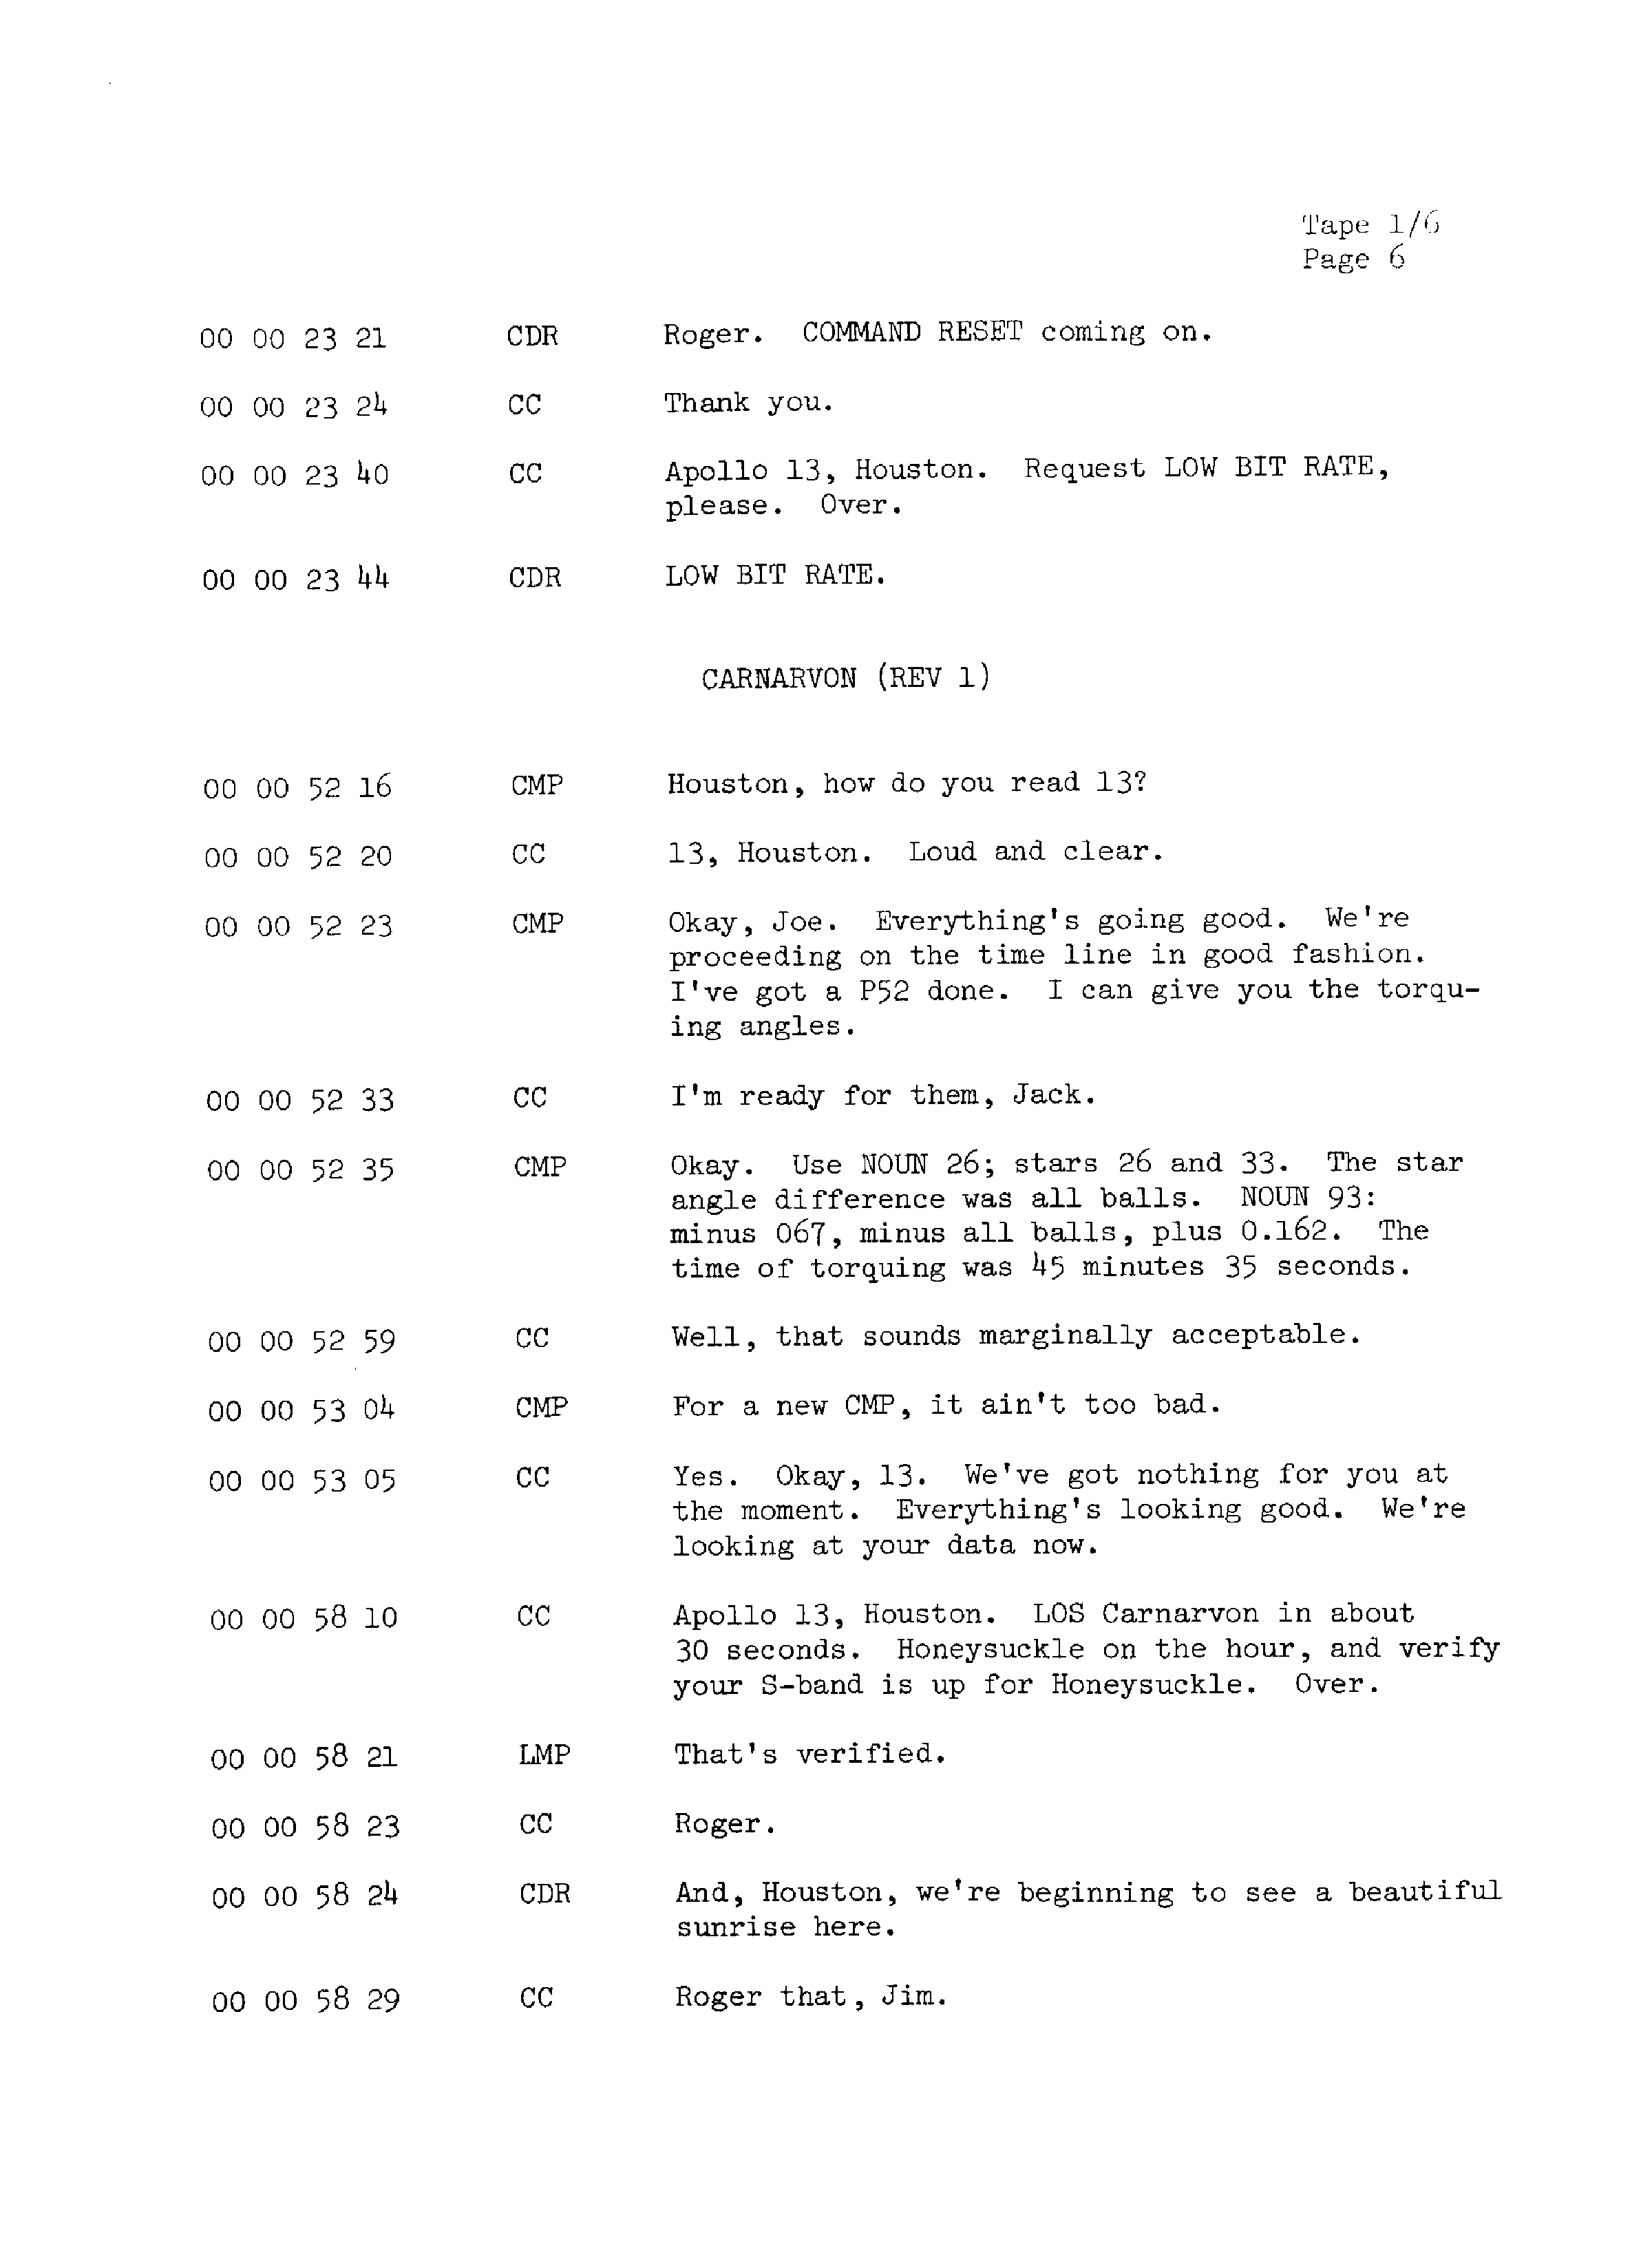 Page 13 of Apollo 13’s original transcript